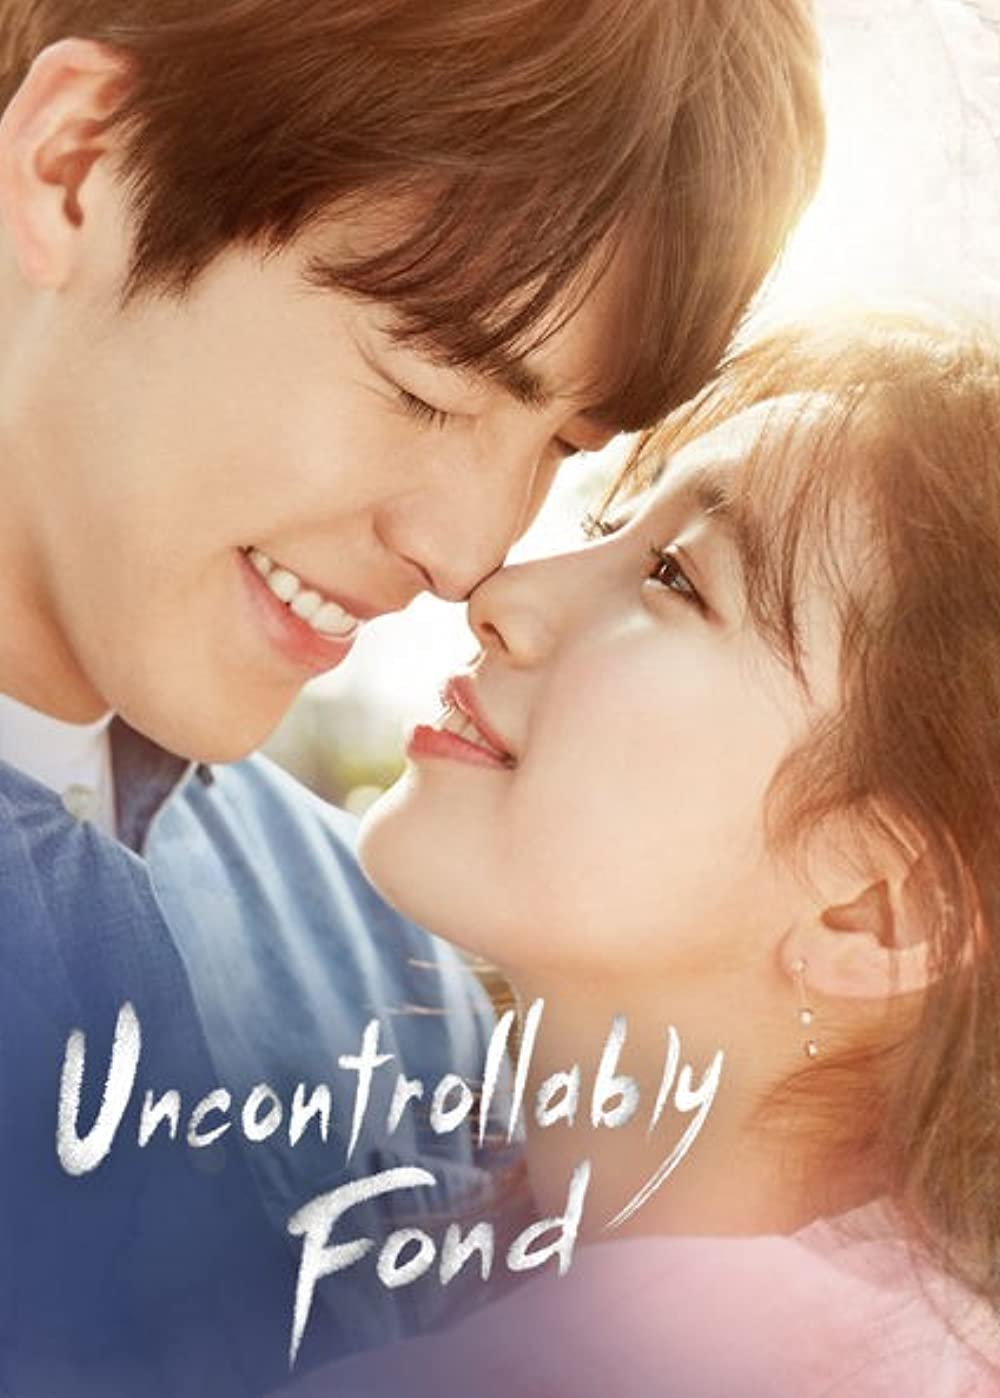 11 Drama Korea kisahkan pasangan yang gagal bersama, bikin sedih